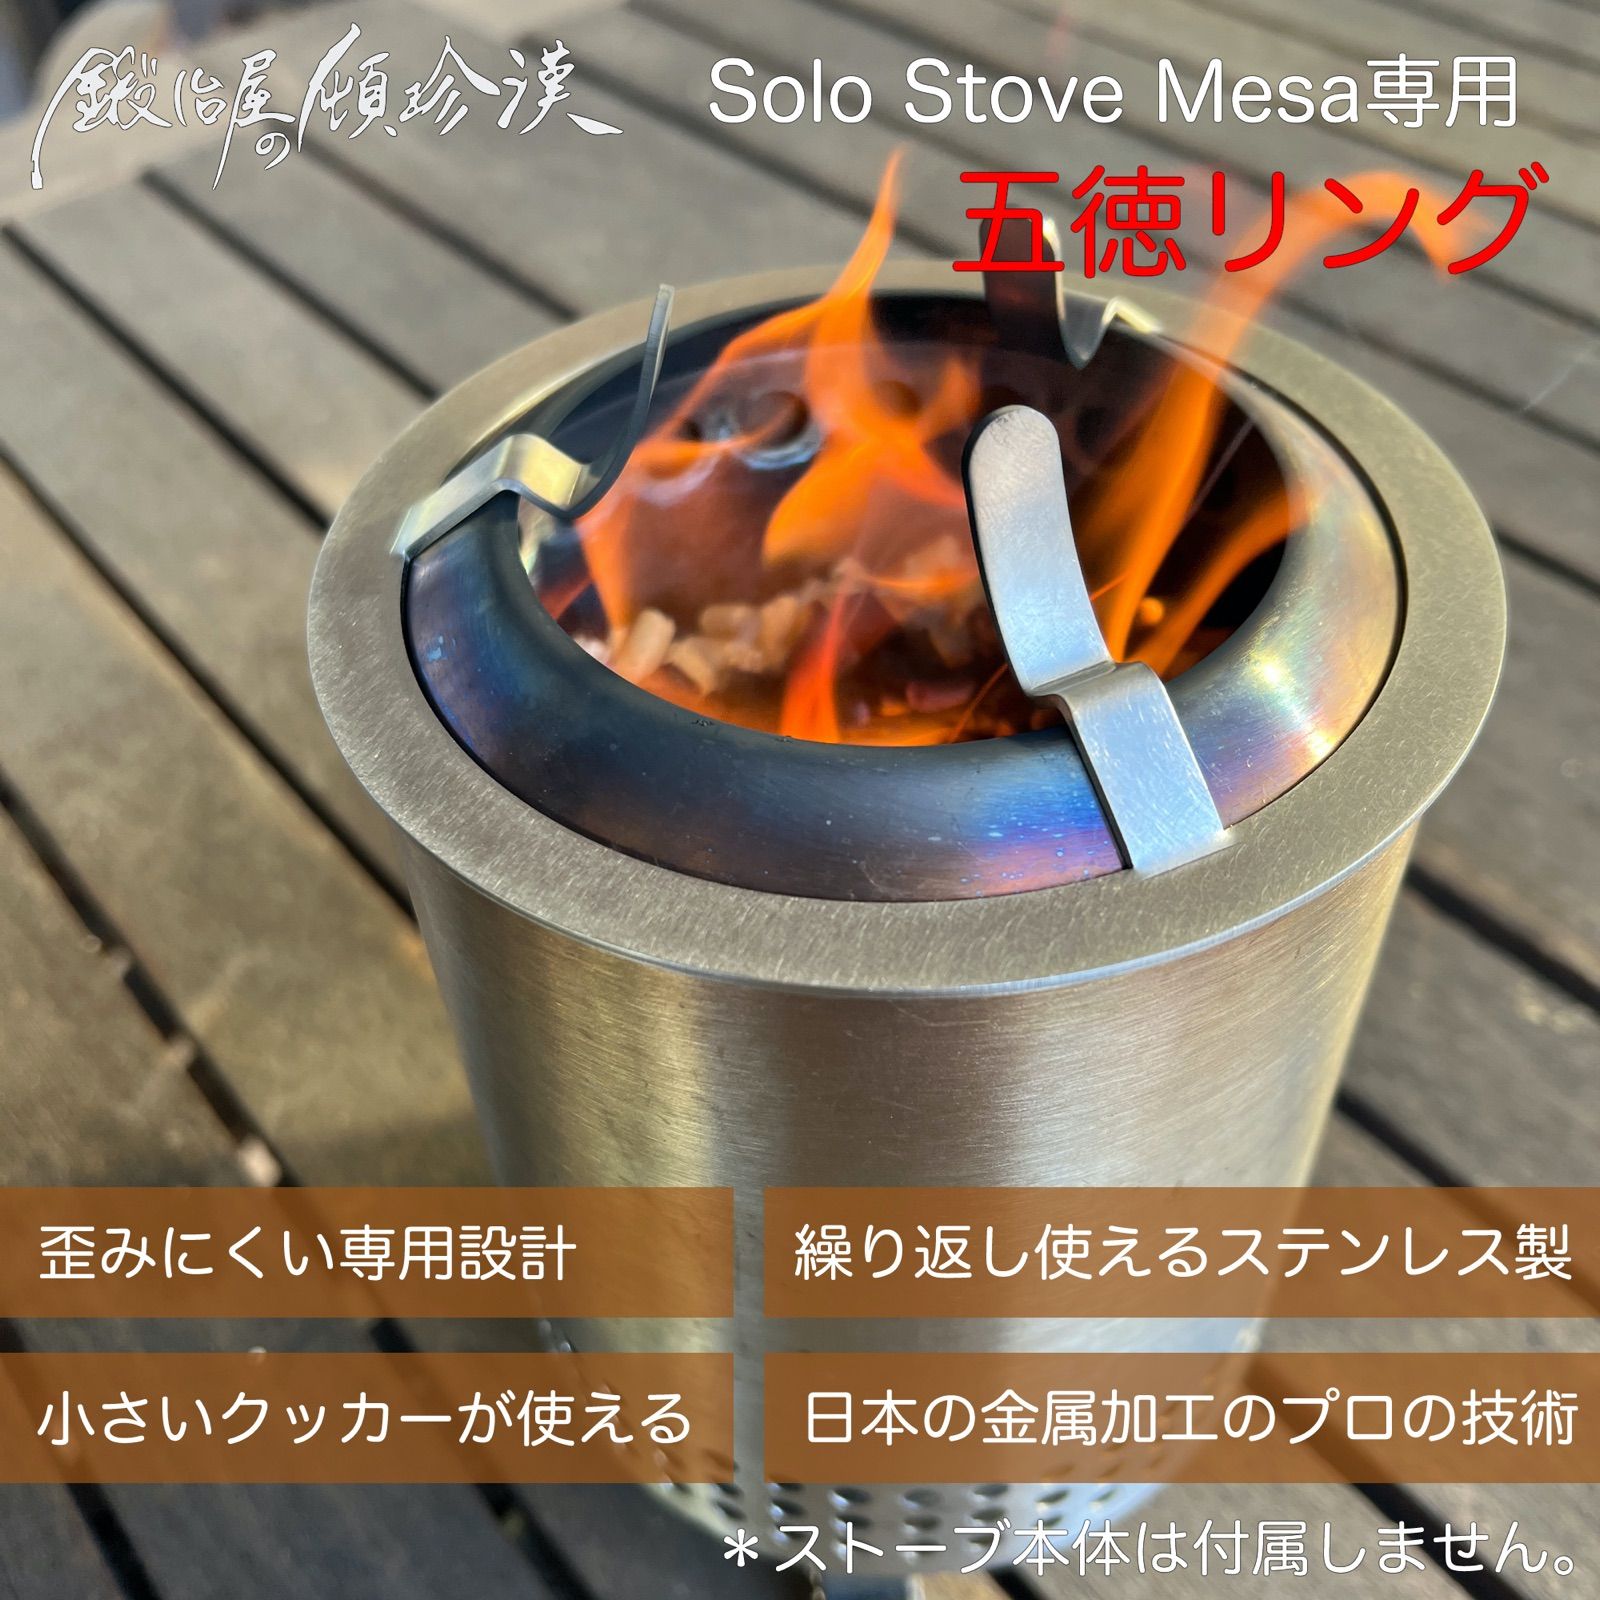 ソロストーブ メサ Solo Stove Mesa 専用五徳リング